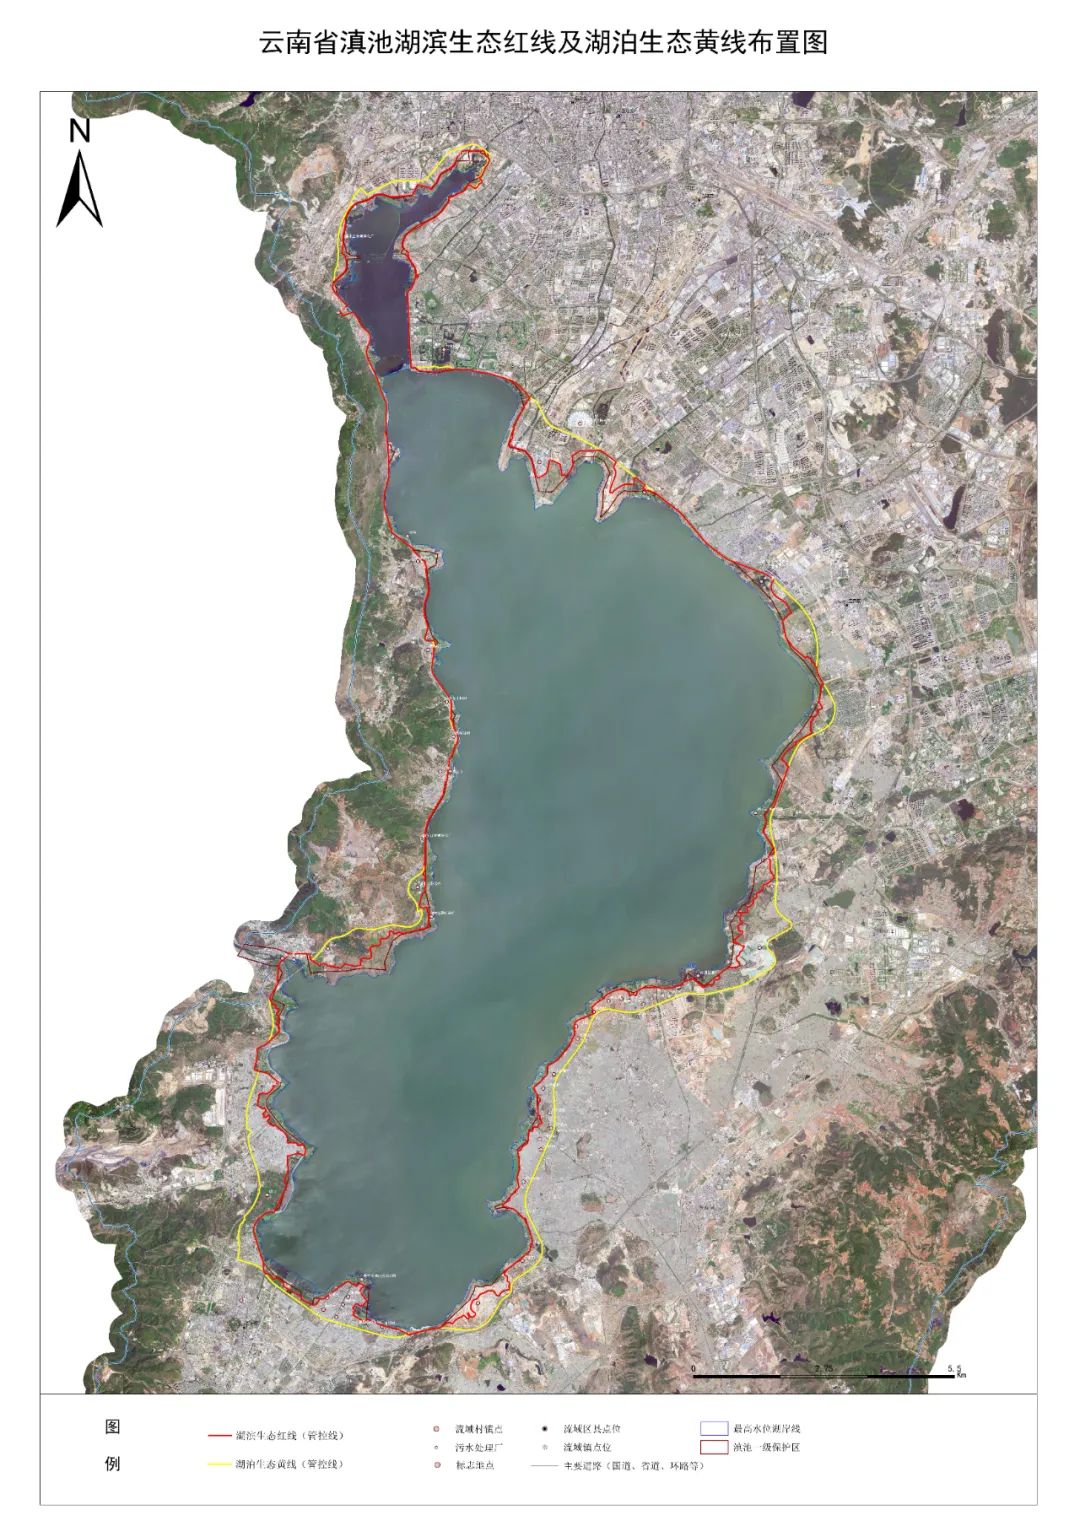 绿色发展区生态保护缓冲区生态保护核心区滇池流域将划分为滇池两线